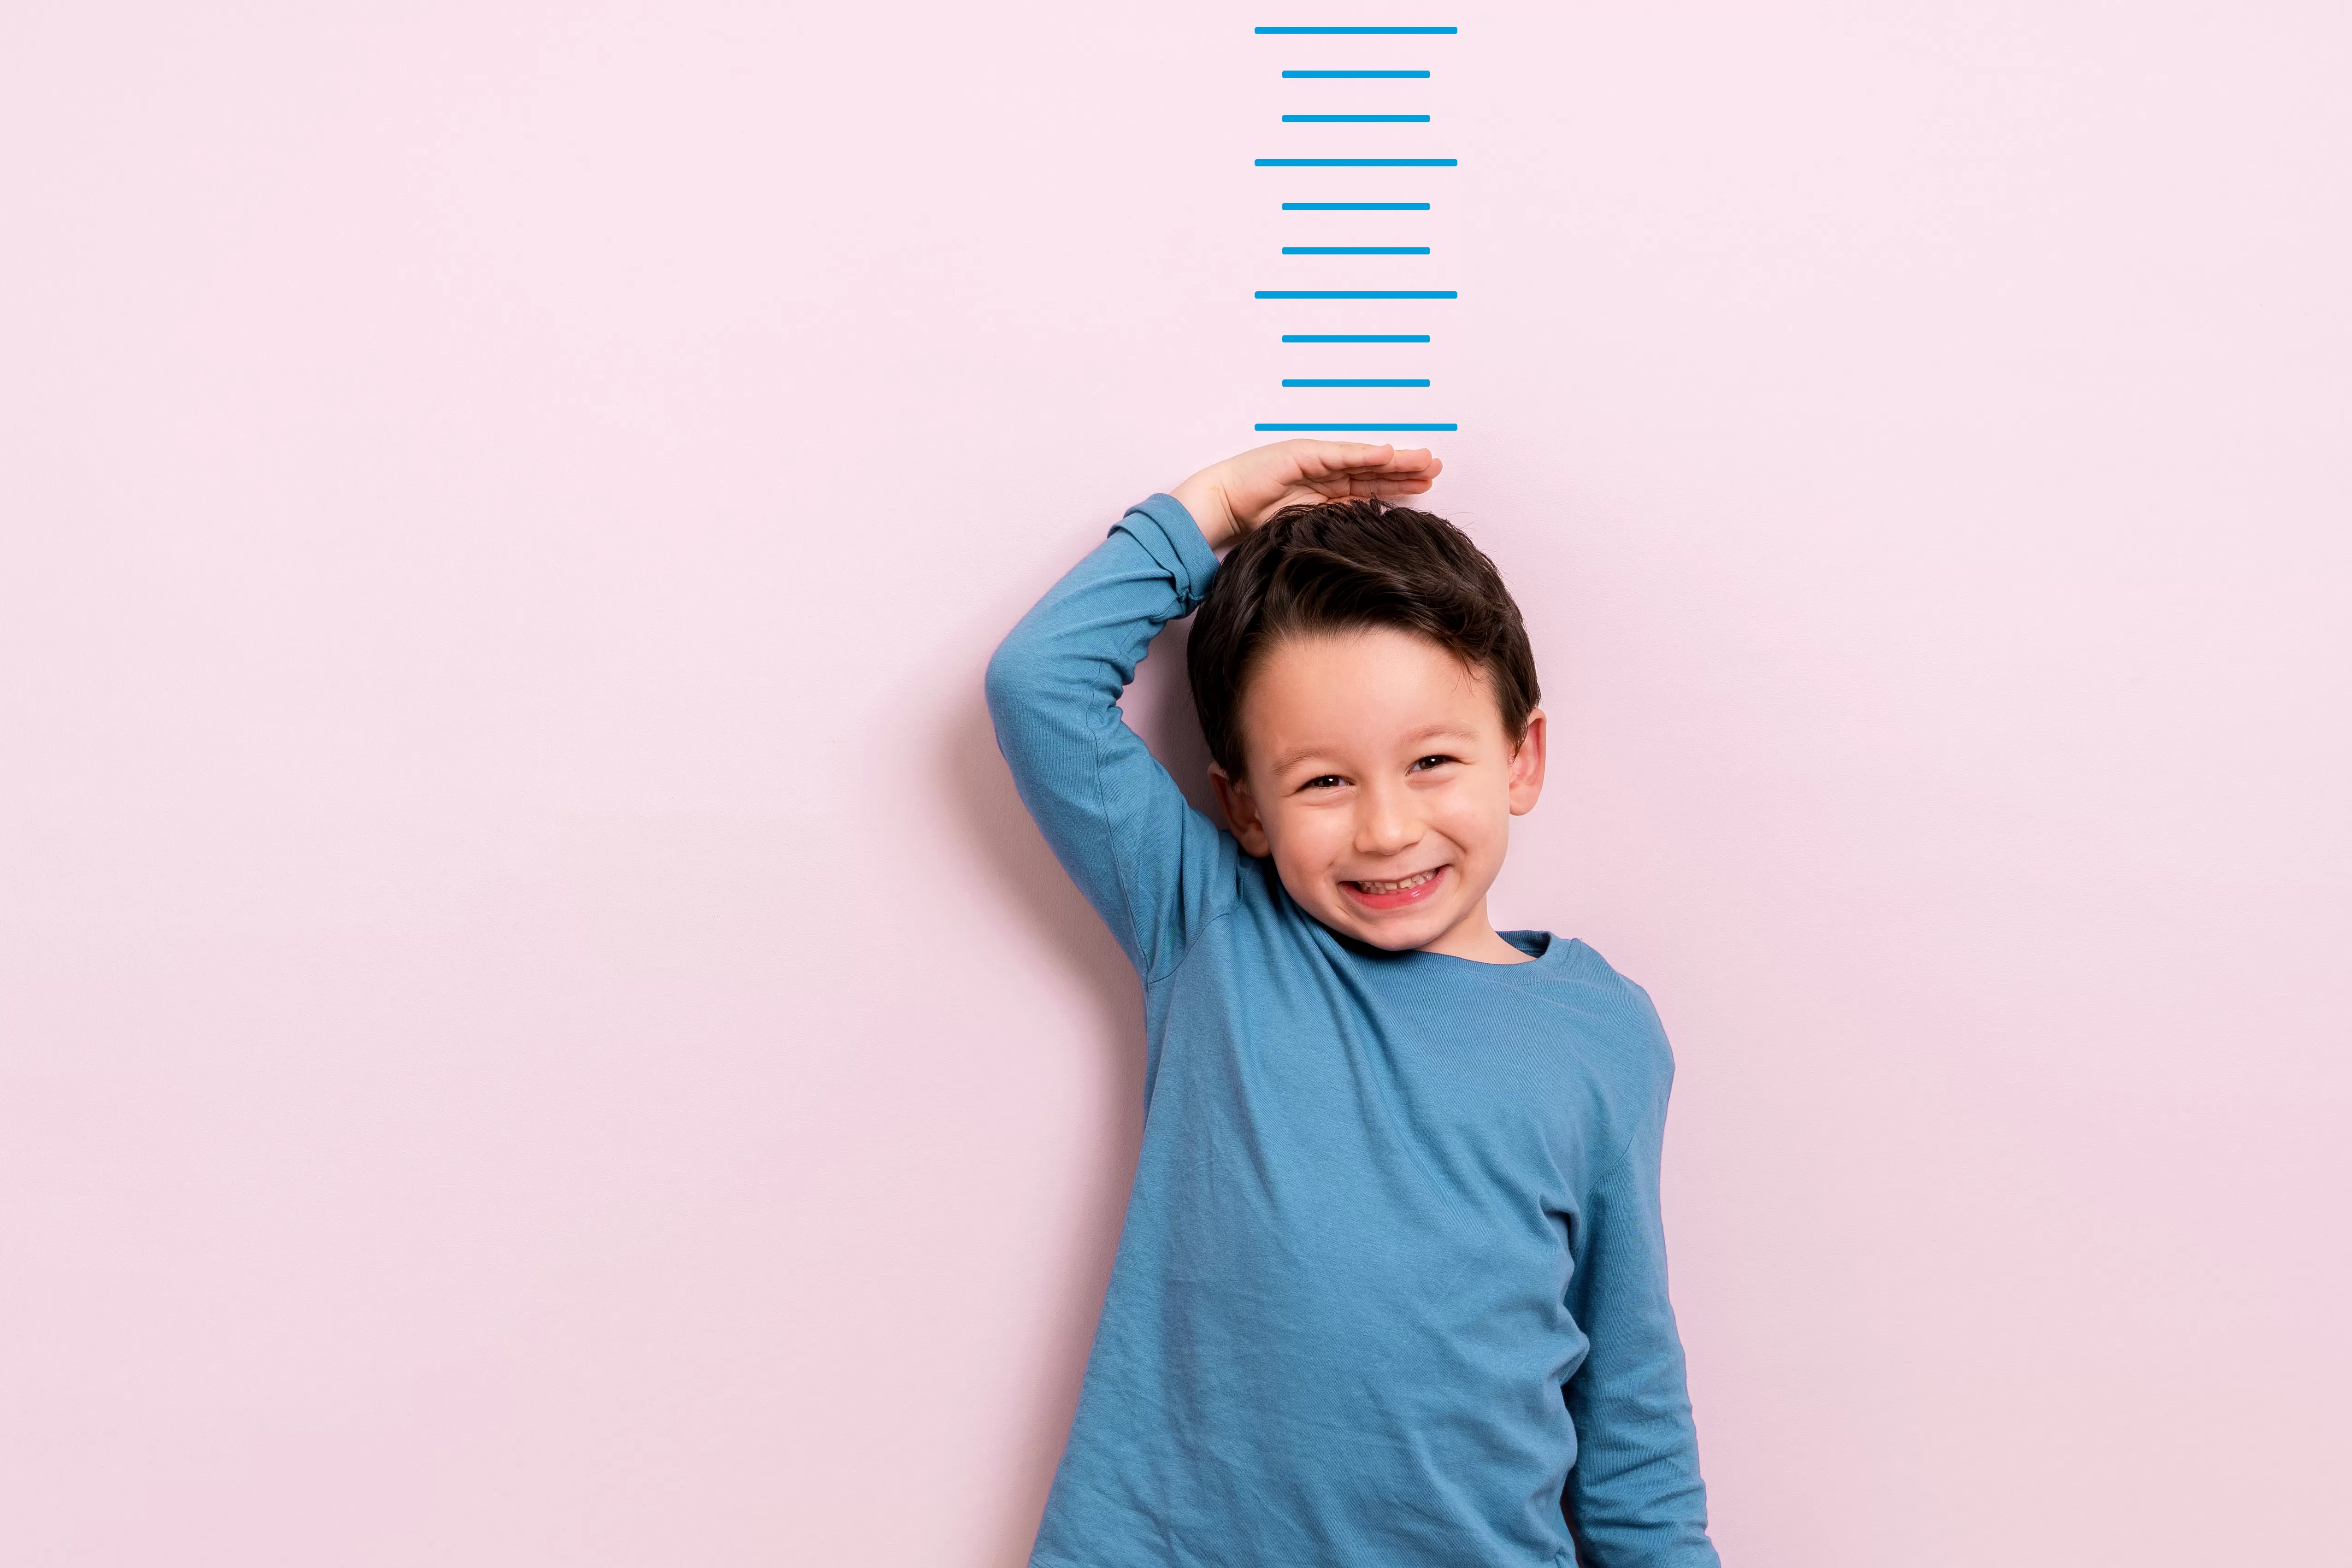 Criança de camisa azul encostado em uma parede rosa com desenho de uma régua medindo seu tamanho 